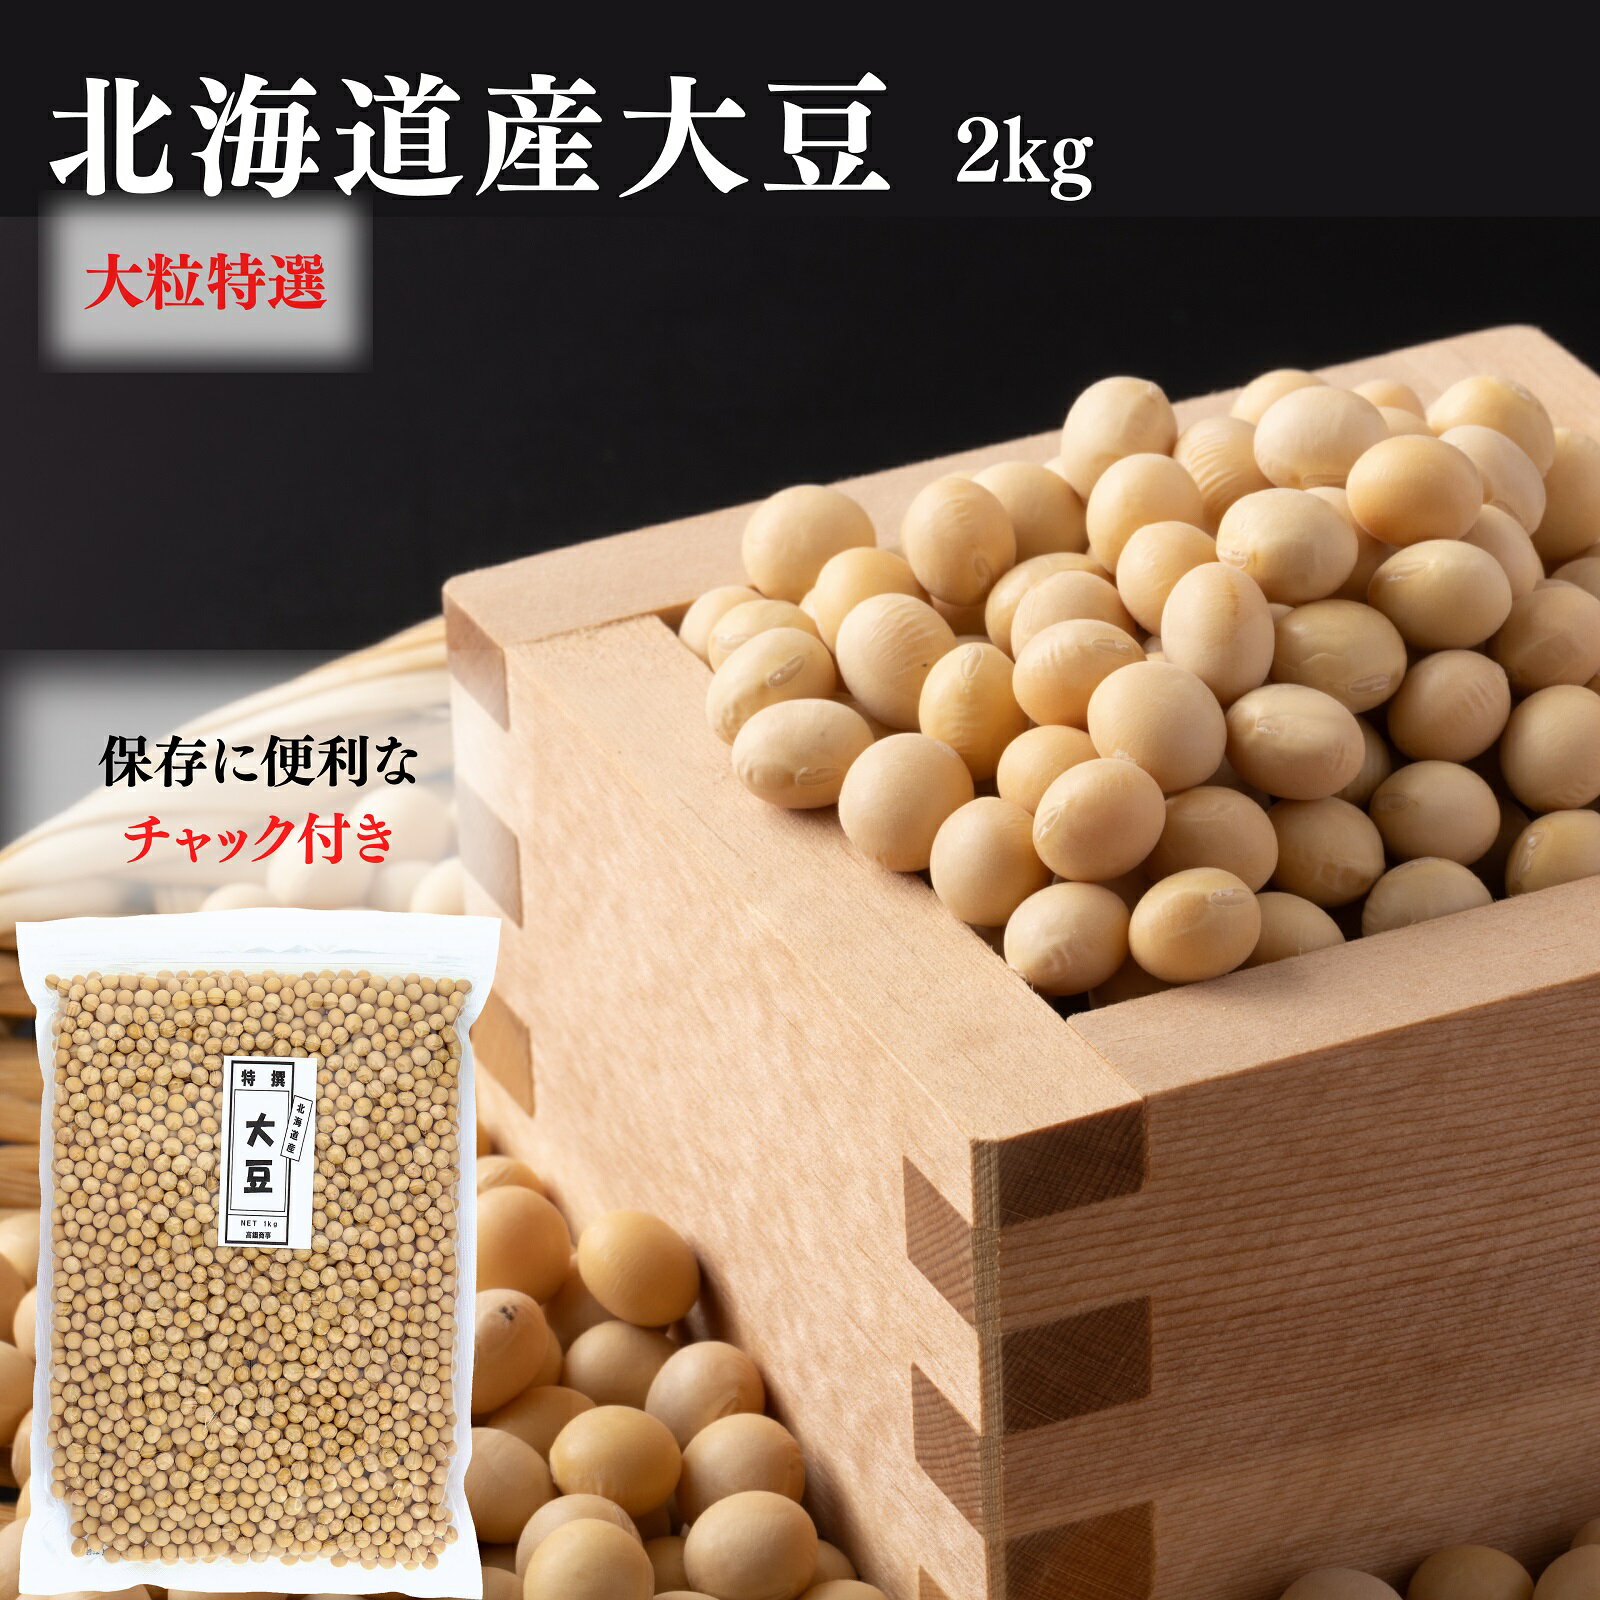 北海道大豆【特選】2kg(1kg×2袋) とよまさり 北海道